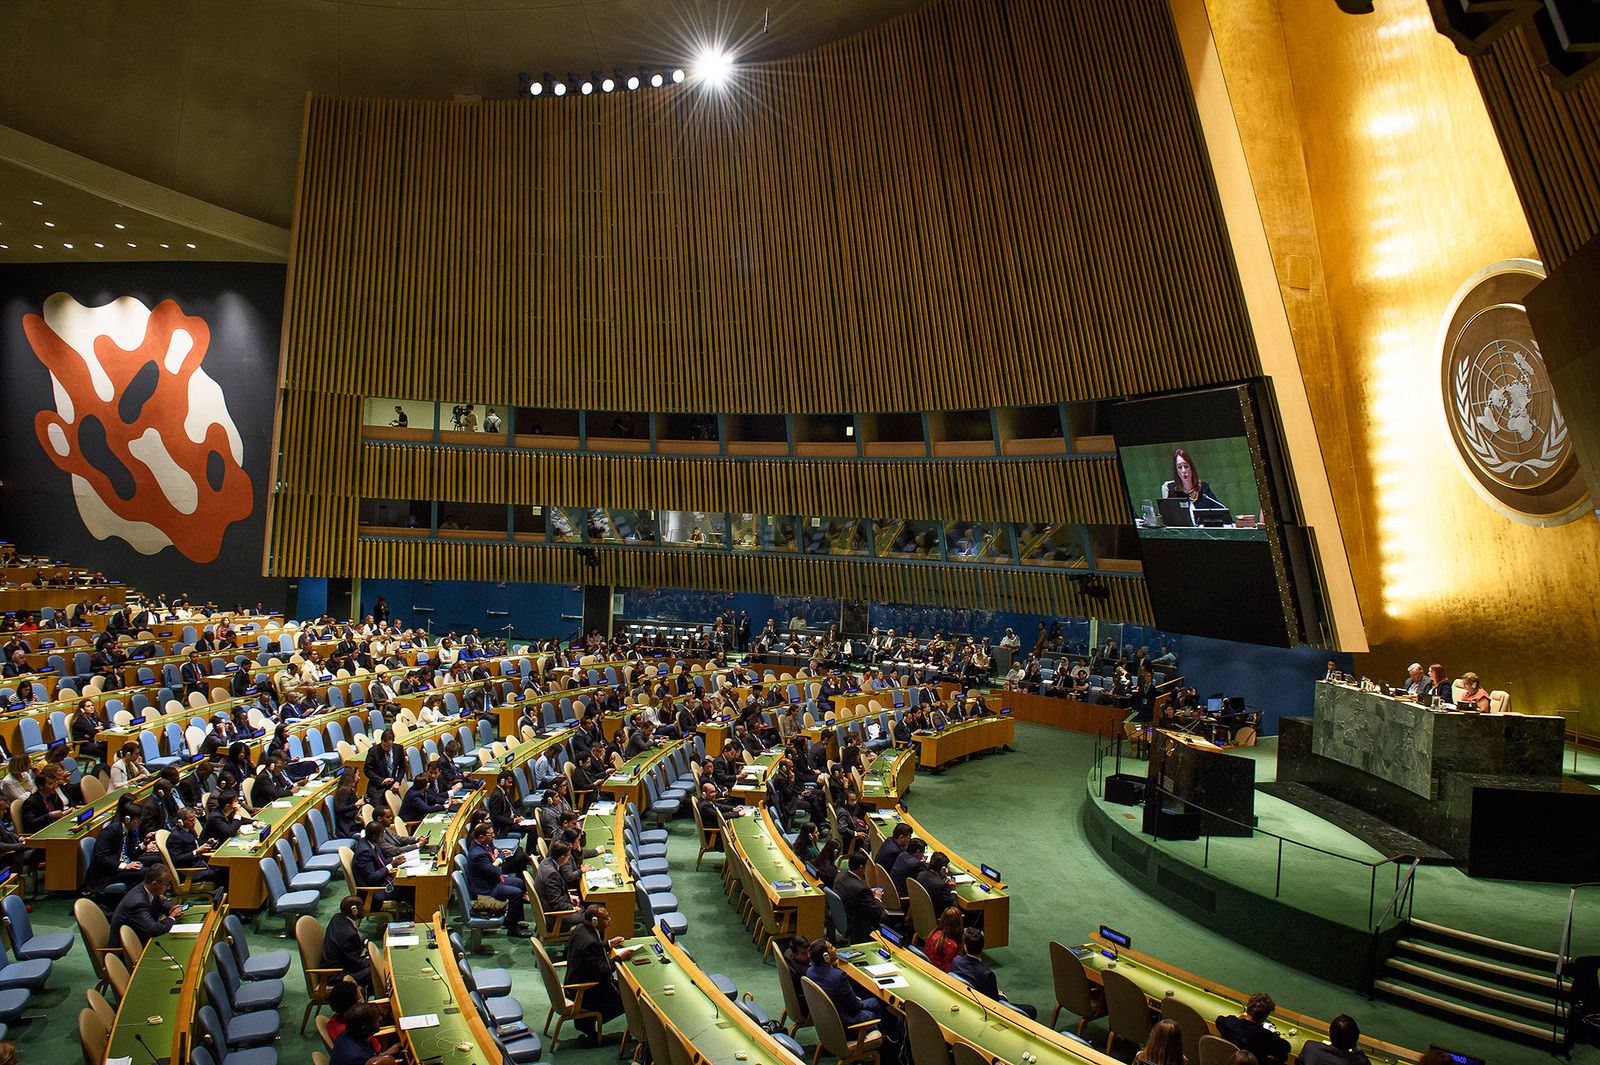 Ассамблея оон резолюции. 1985генеральная асаблея ООН. Генеральная Ассамблея ООН В Женеве. Ассамблея ООН 1985. Генеральная Ассамблея ООН 2023.